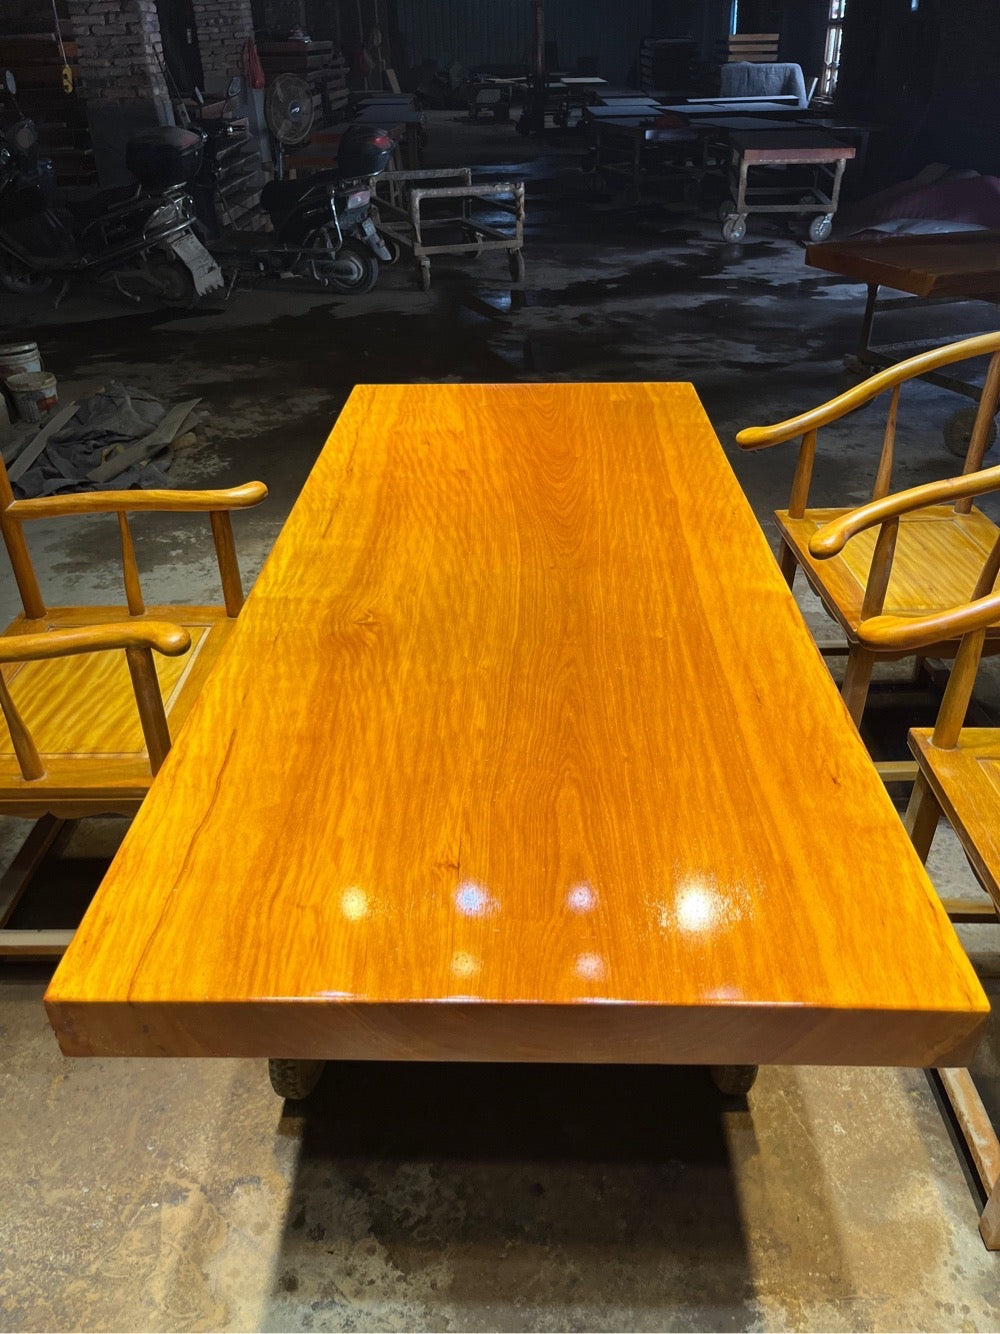 لوح خشبي، وطاولة Live Edge Chiviri، ومكتب خشبي طبيعي مخصص لتناول الطعام